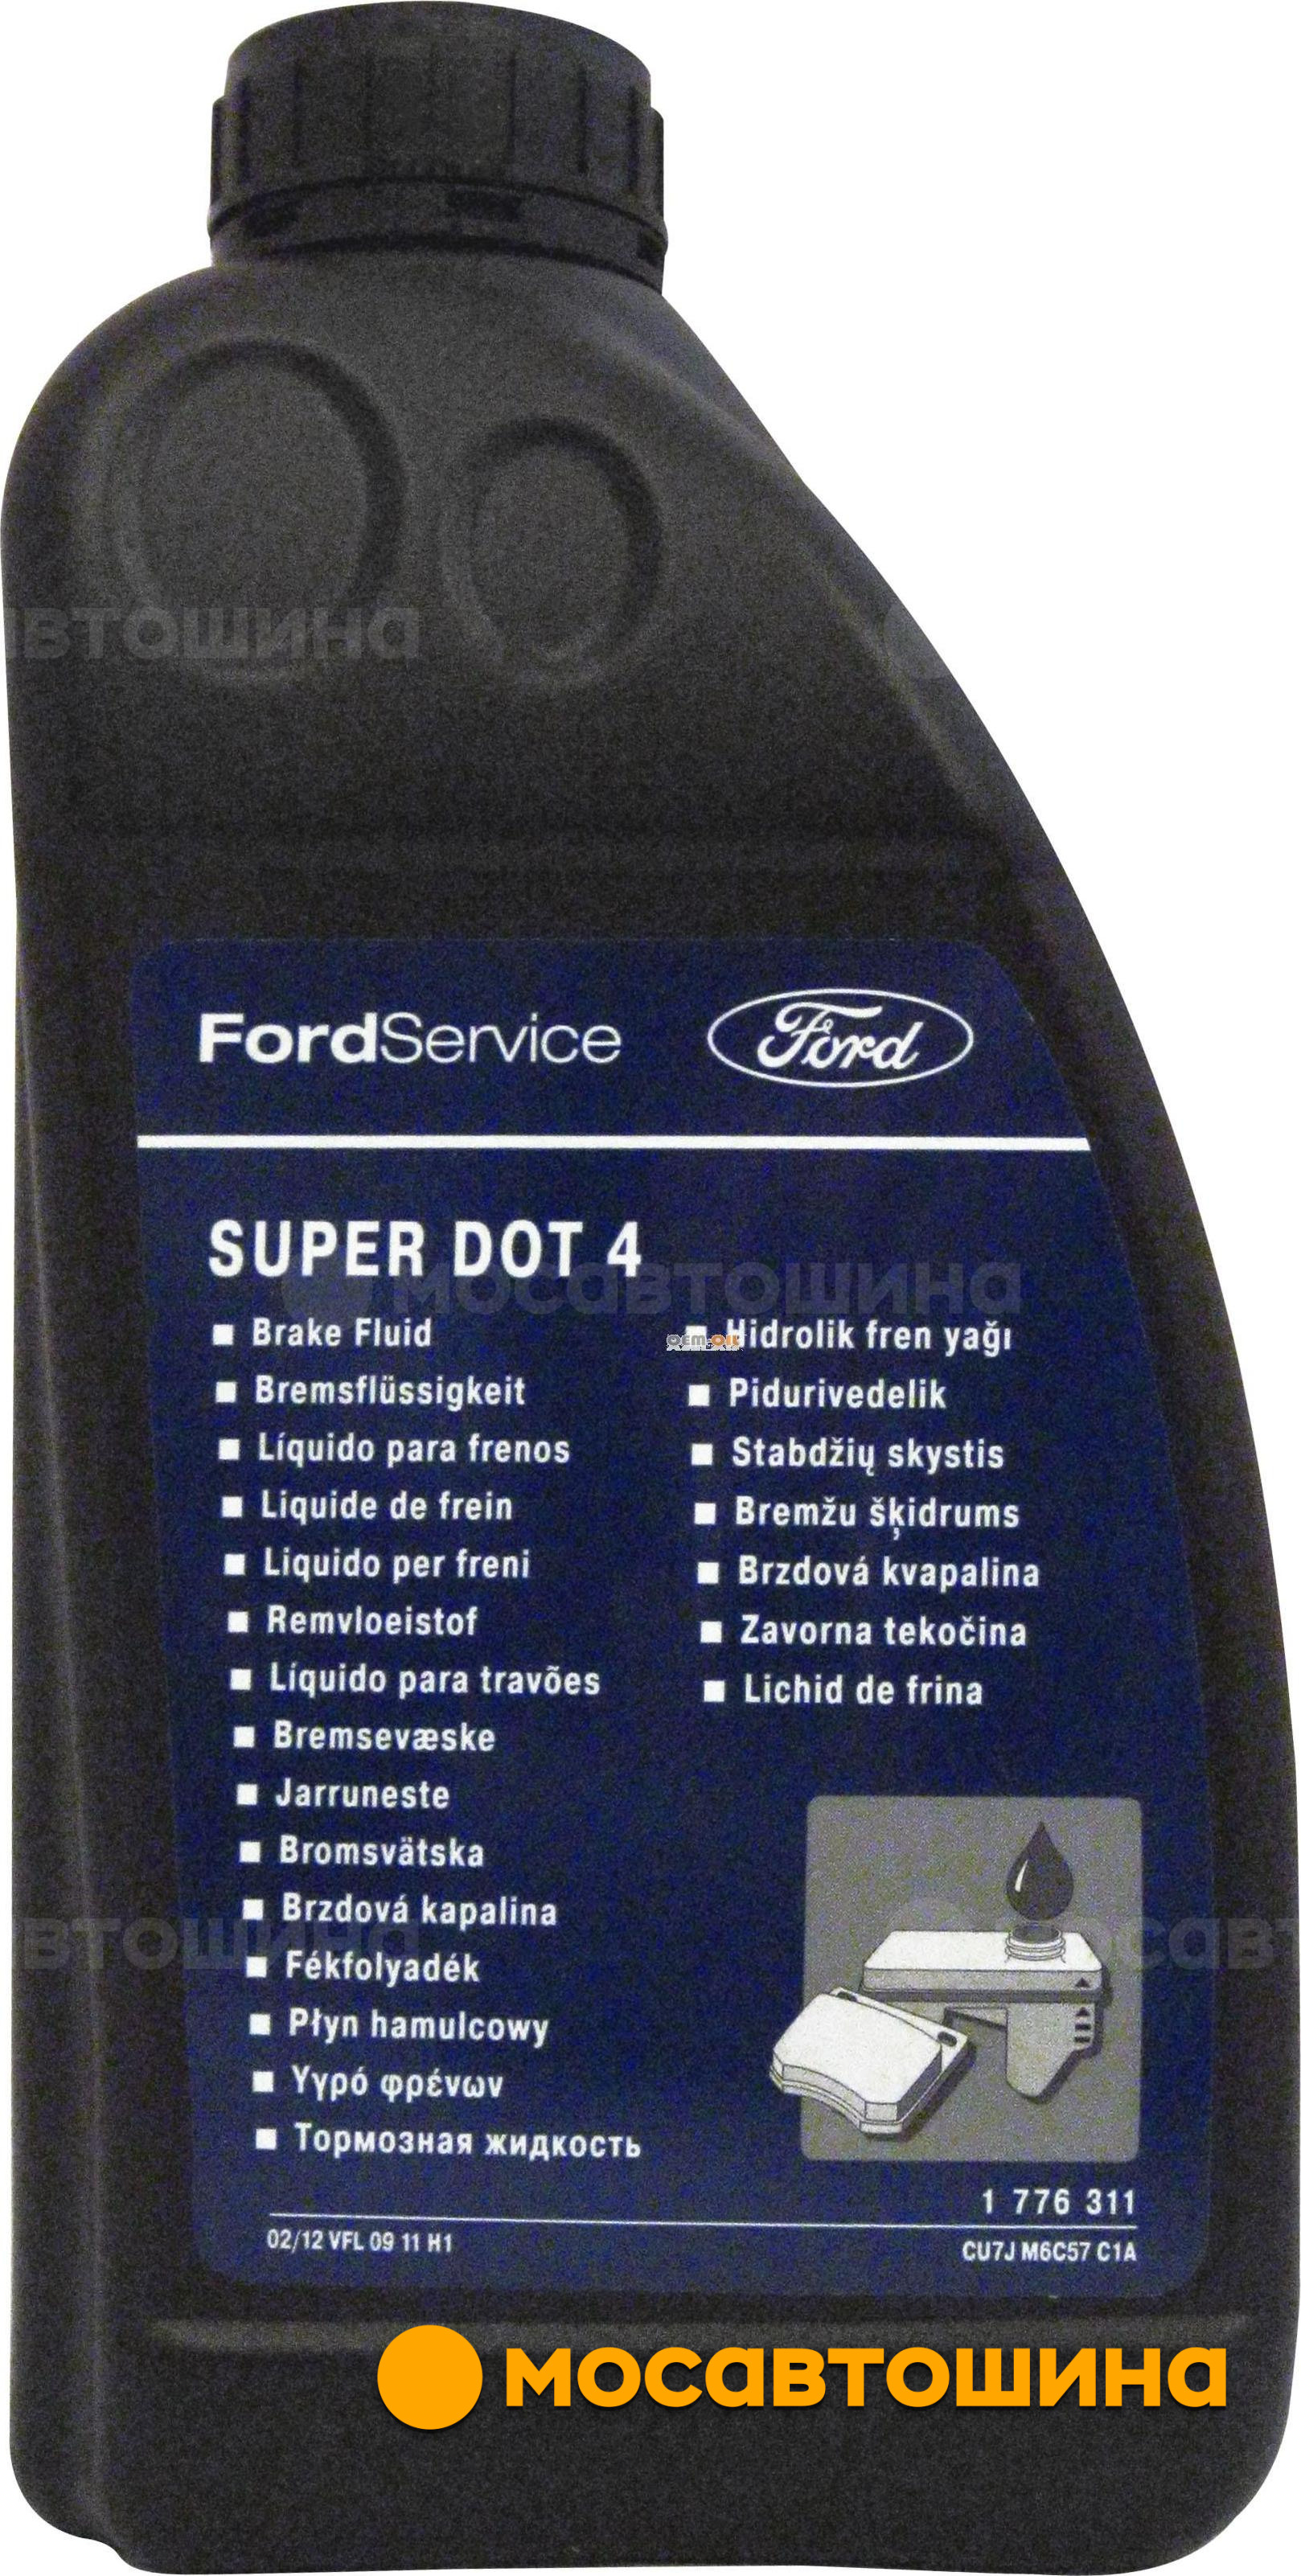 Купить Ford Focus (Форд Фокус 3), цены и комплектации 2017 ...